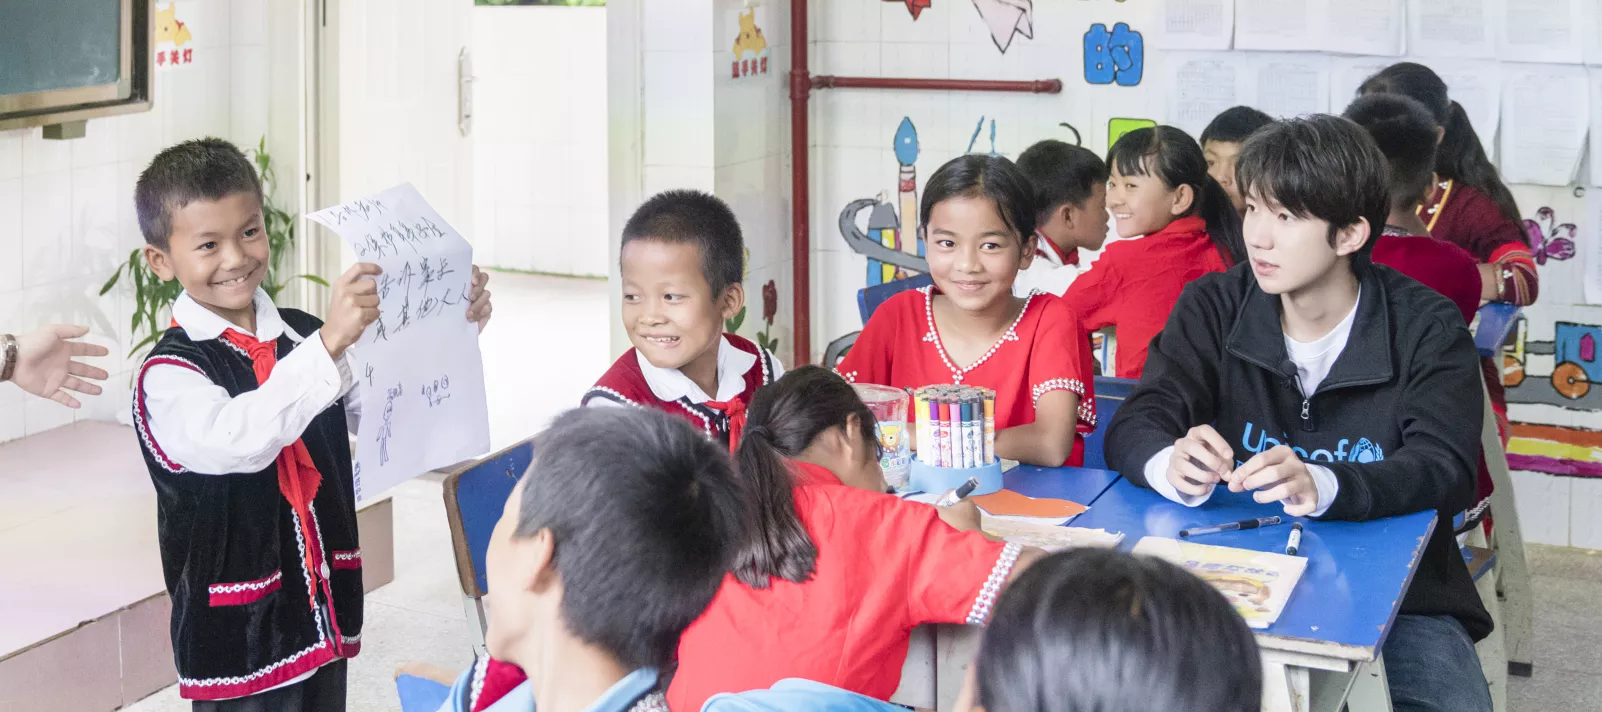 2019年7月13日，在云南省沧源县班老乡新寨小学，学生们就如何帮助受欺凌者展开小组讨论，一名学生将讨论结果展示给全班同学。